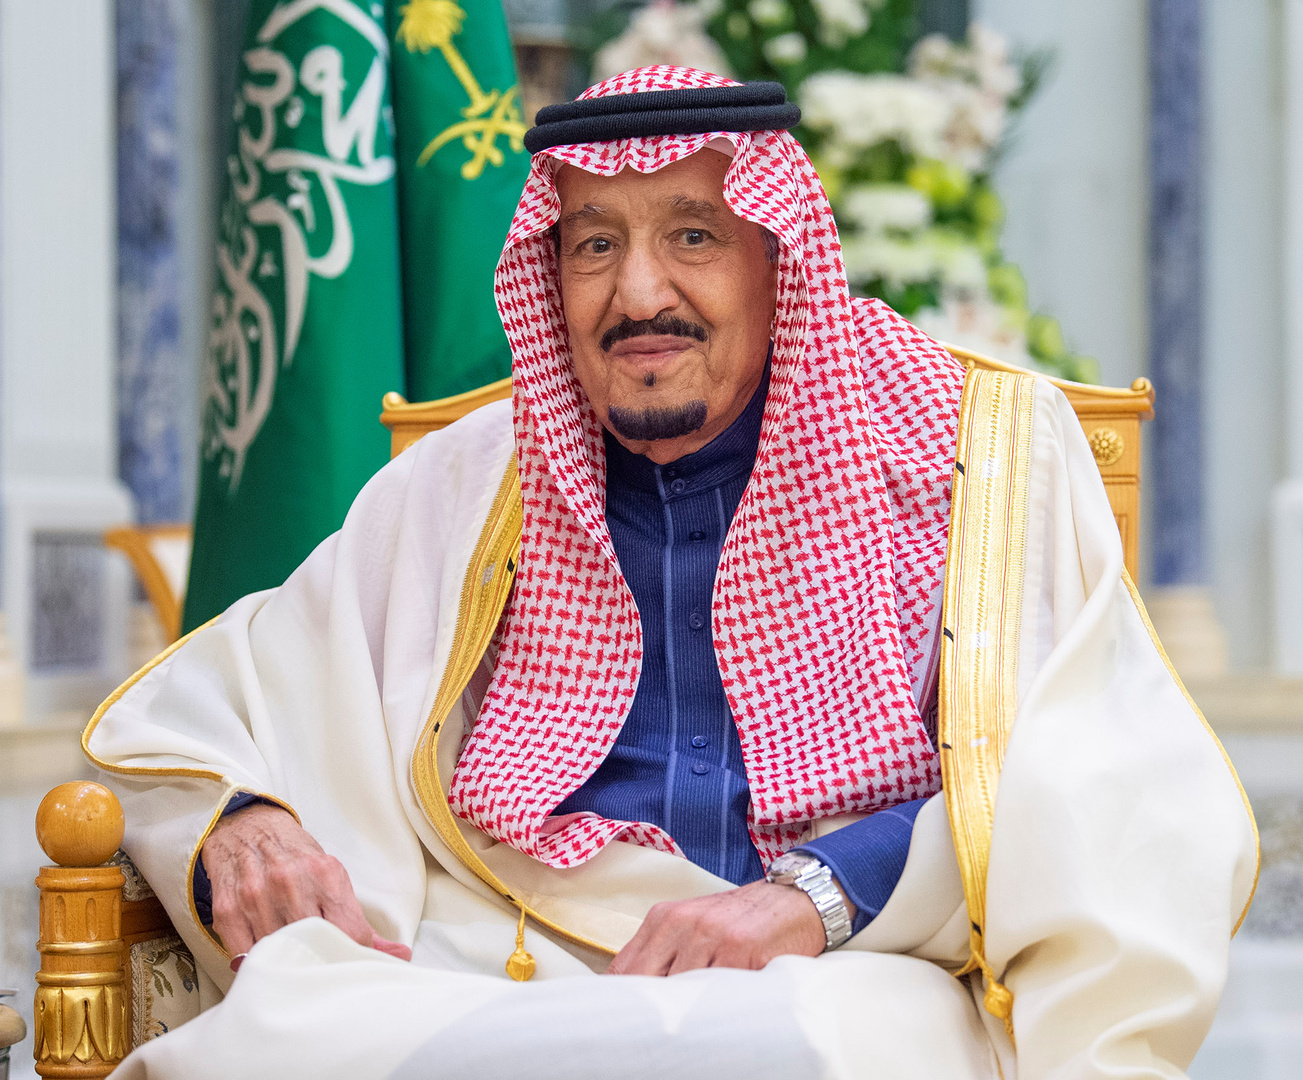 العاهل السعودي يكلف بتوجيه دعوة لقادة دول مجلس التعاون الخليجي لحضور القمة المقبلة